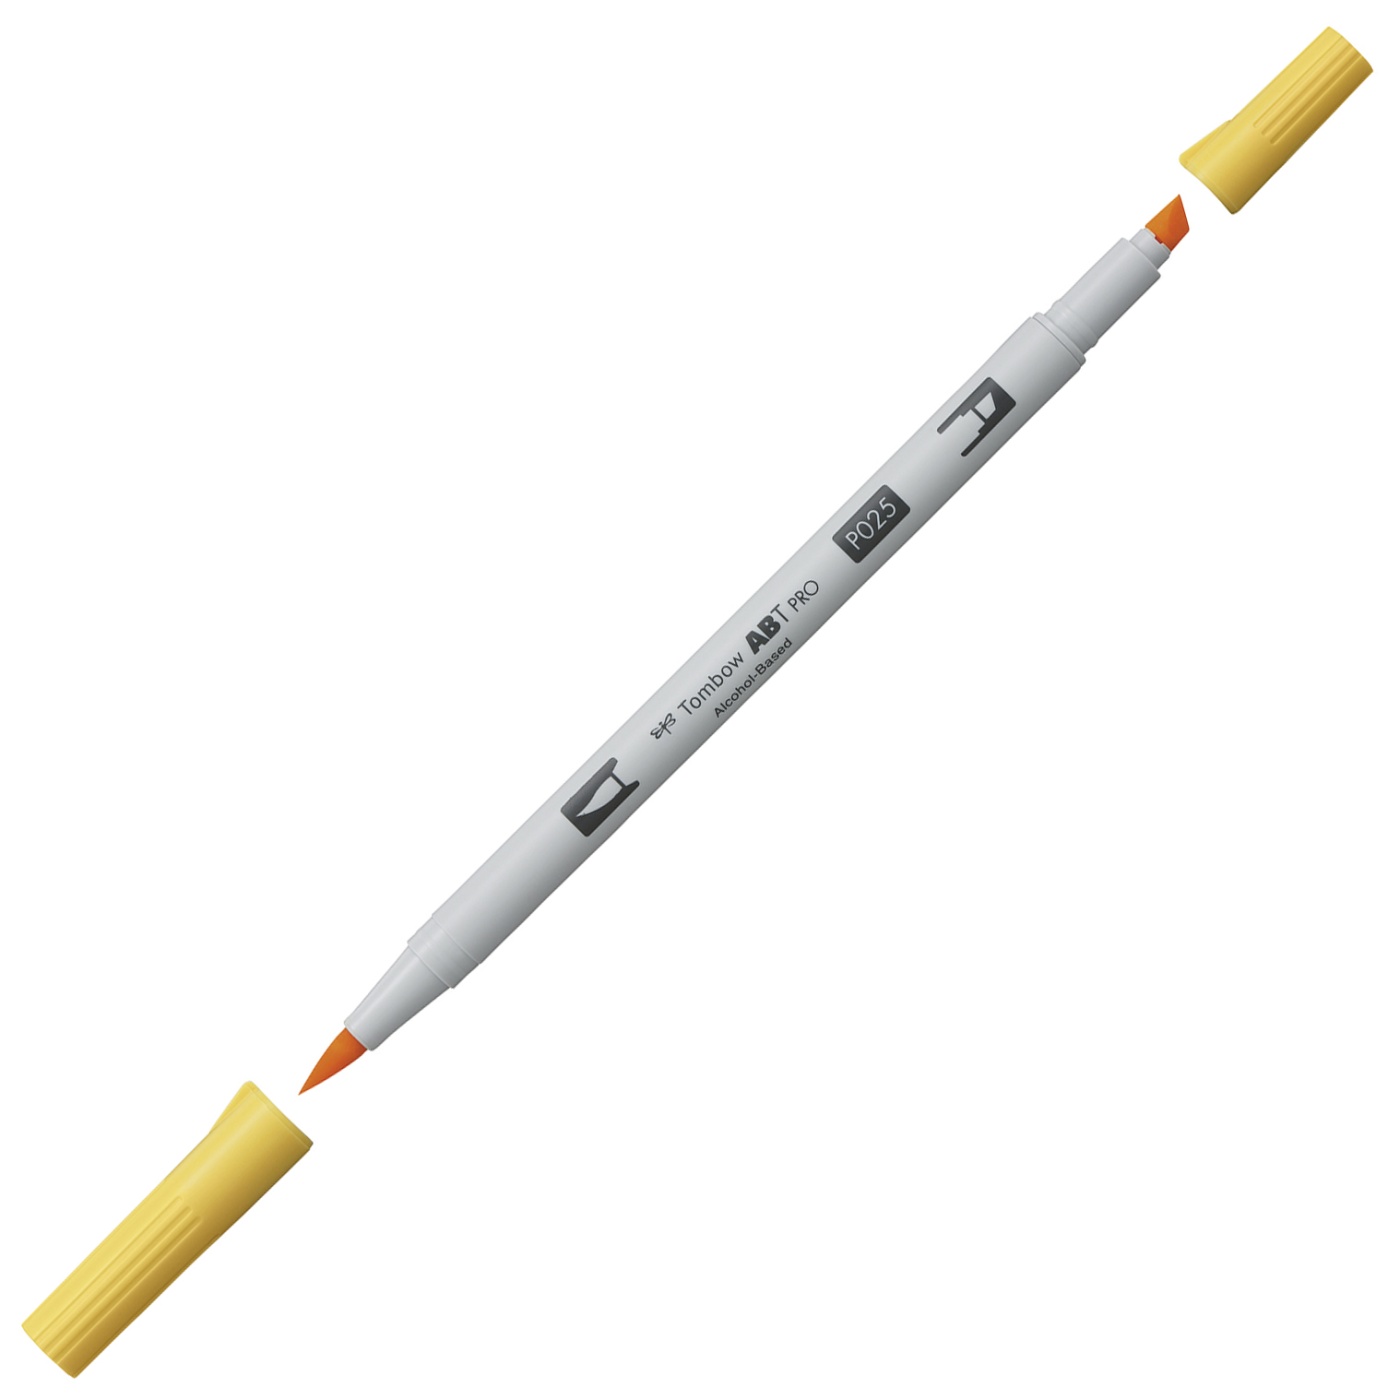 ABT PRO Dual Brush Pen 5-set Warm Grey i gruppen Pennor / Konstnärspennor / Illustrationsmarkers hos Pen Store (101258)